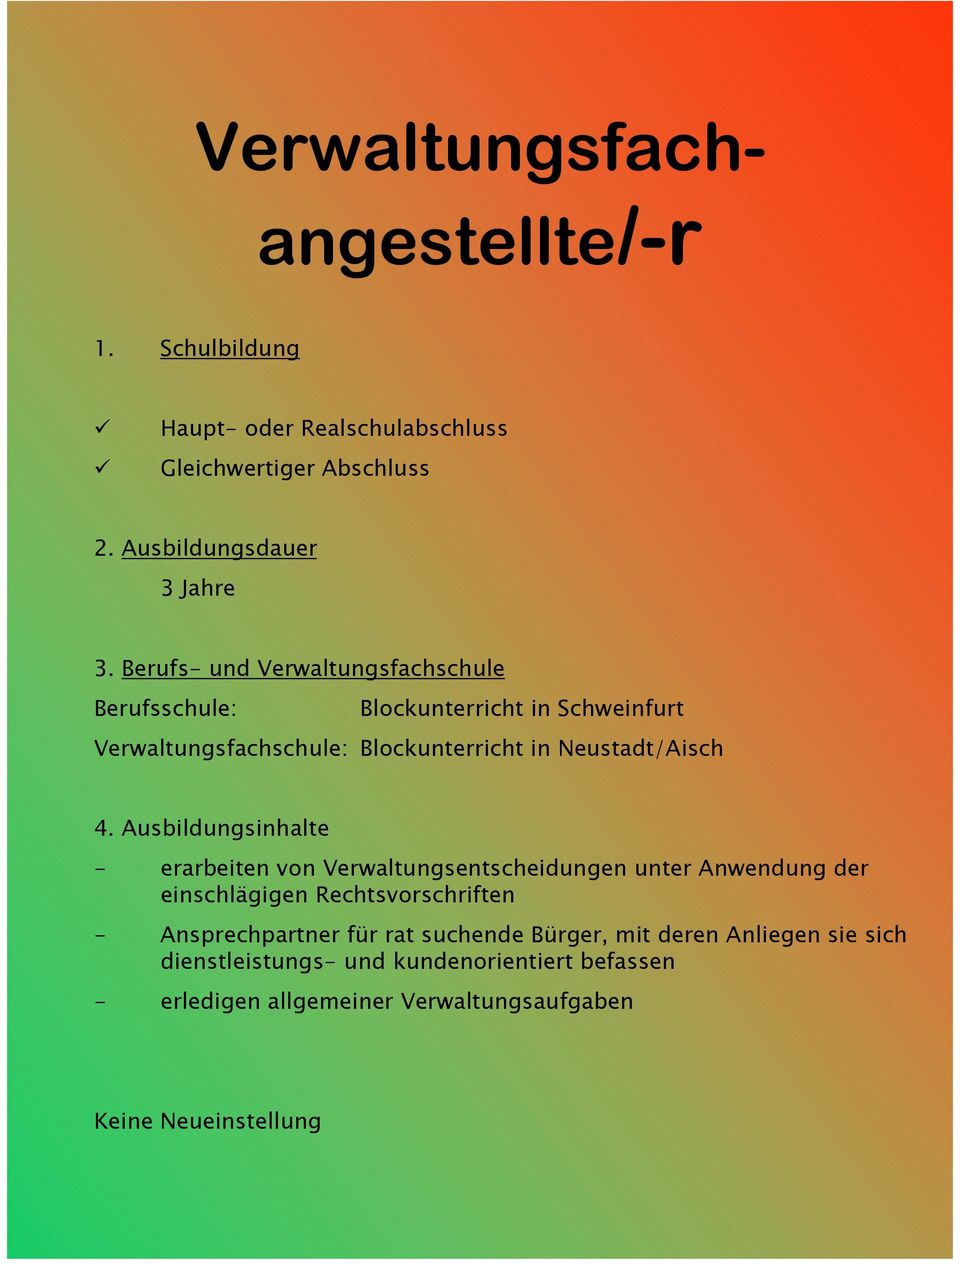 Neustadt/Aisch - erarbeiten von Verwaltungsentscheidungen unter Anwendung der einschlägigen Rechtsvorschriften - Ansprechpartner